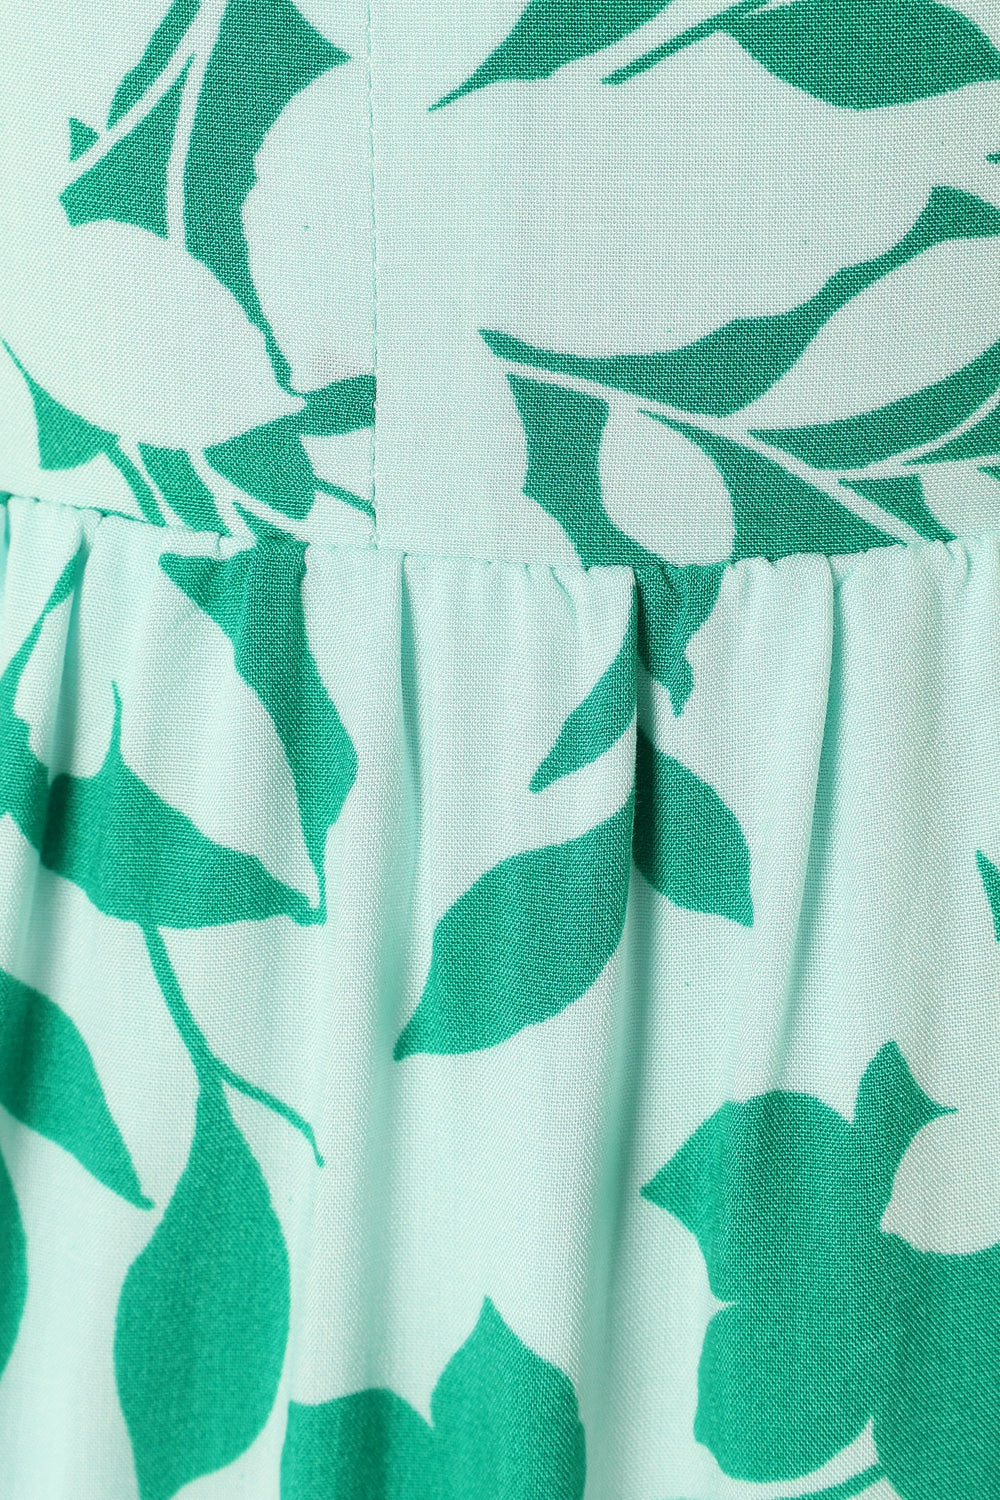 DRESSES @Kenny Midi Dress - Green Floral